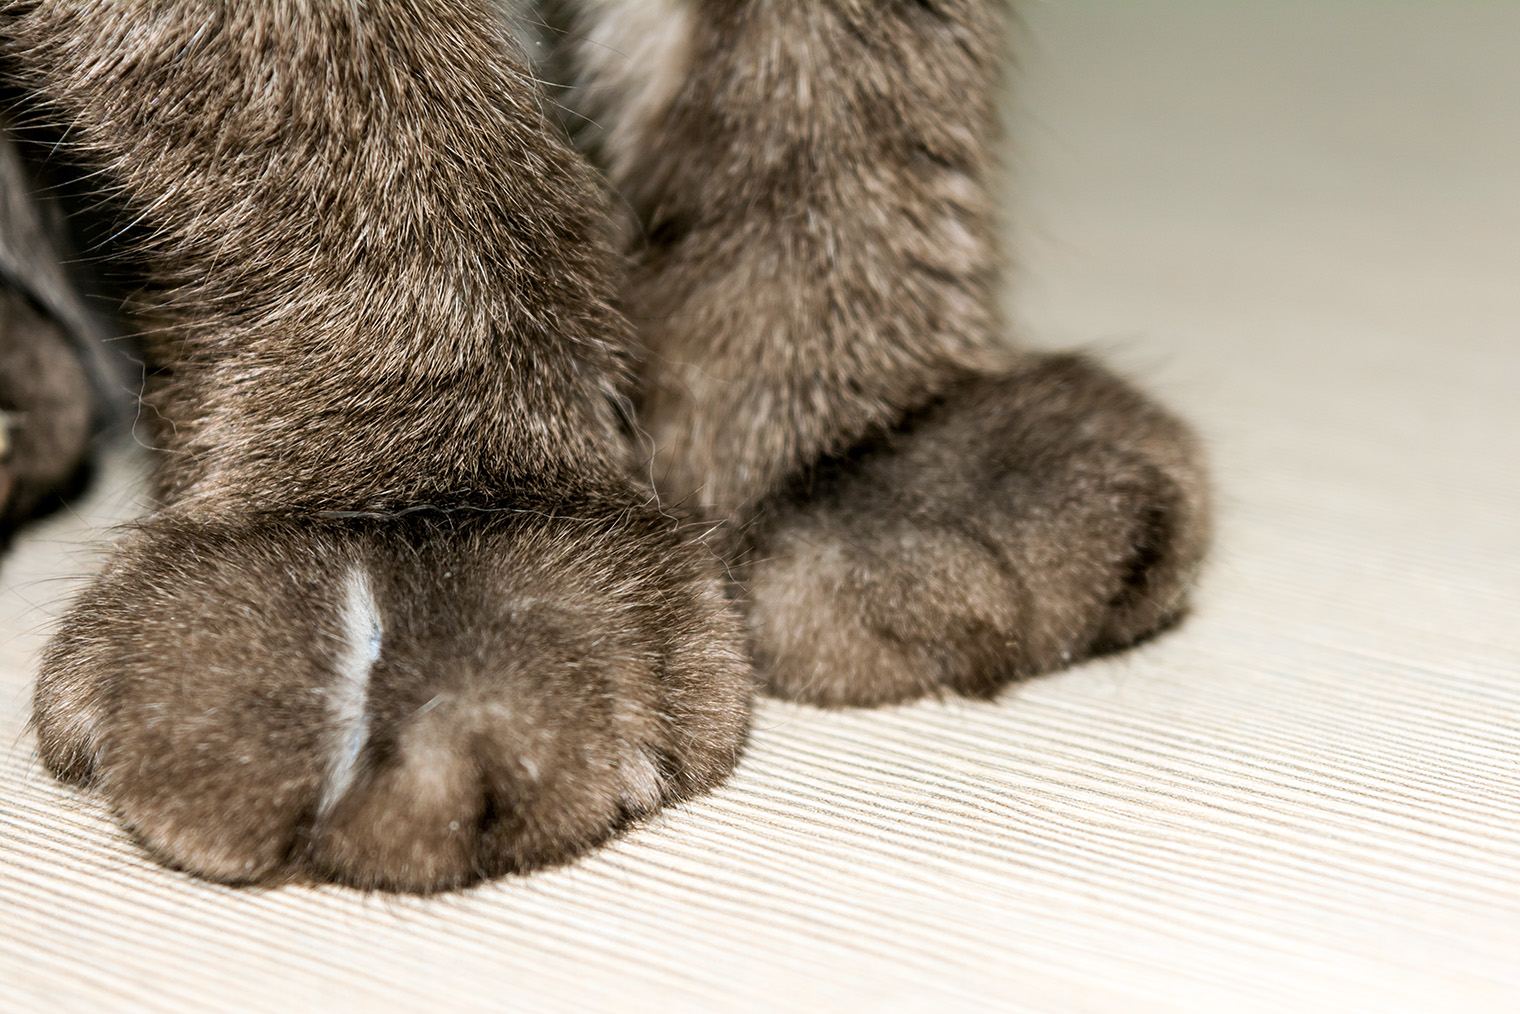 После удаления когтей кошке приходится делать упор на подушечки лап. Это может привести к артриту. Фотография: Anne Punch / Shutterstock